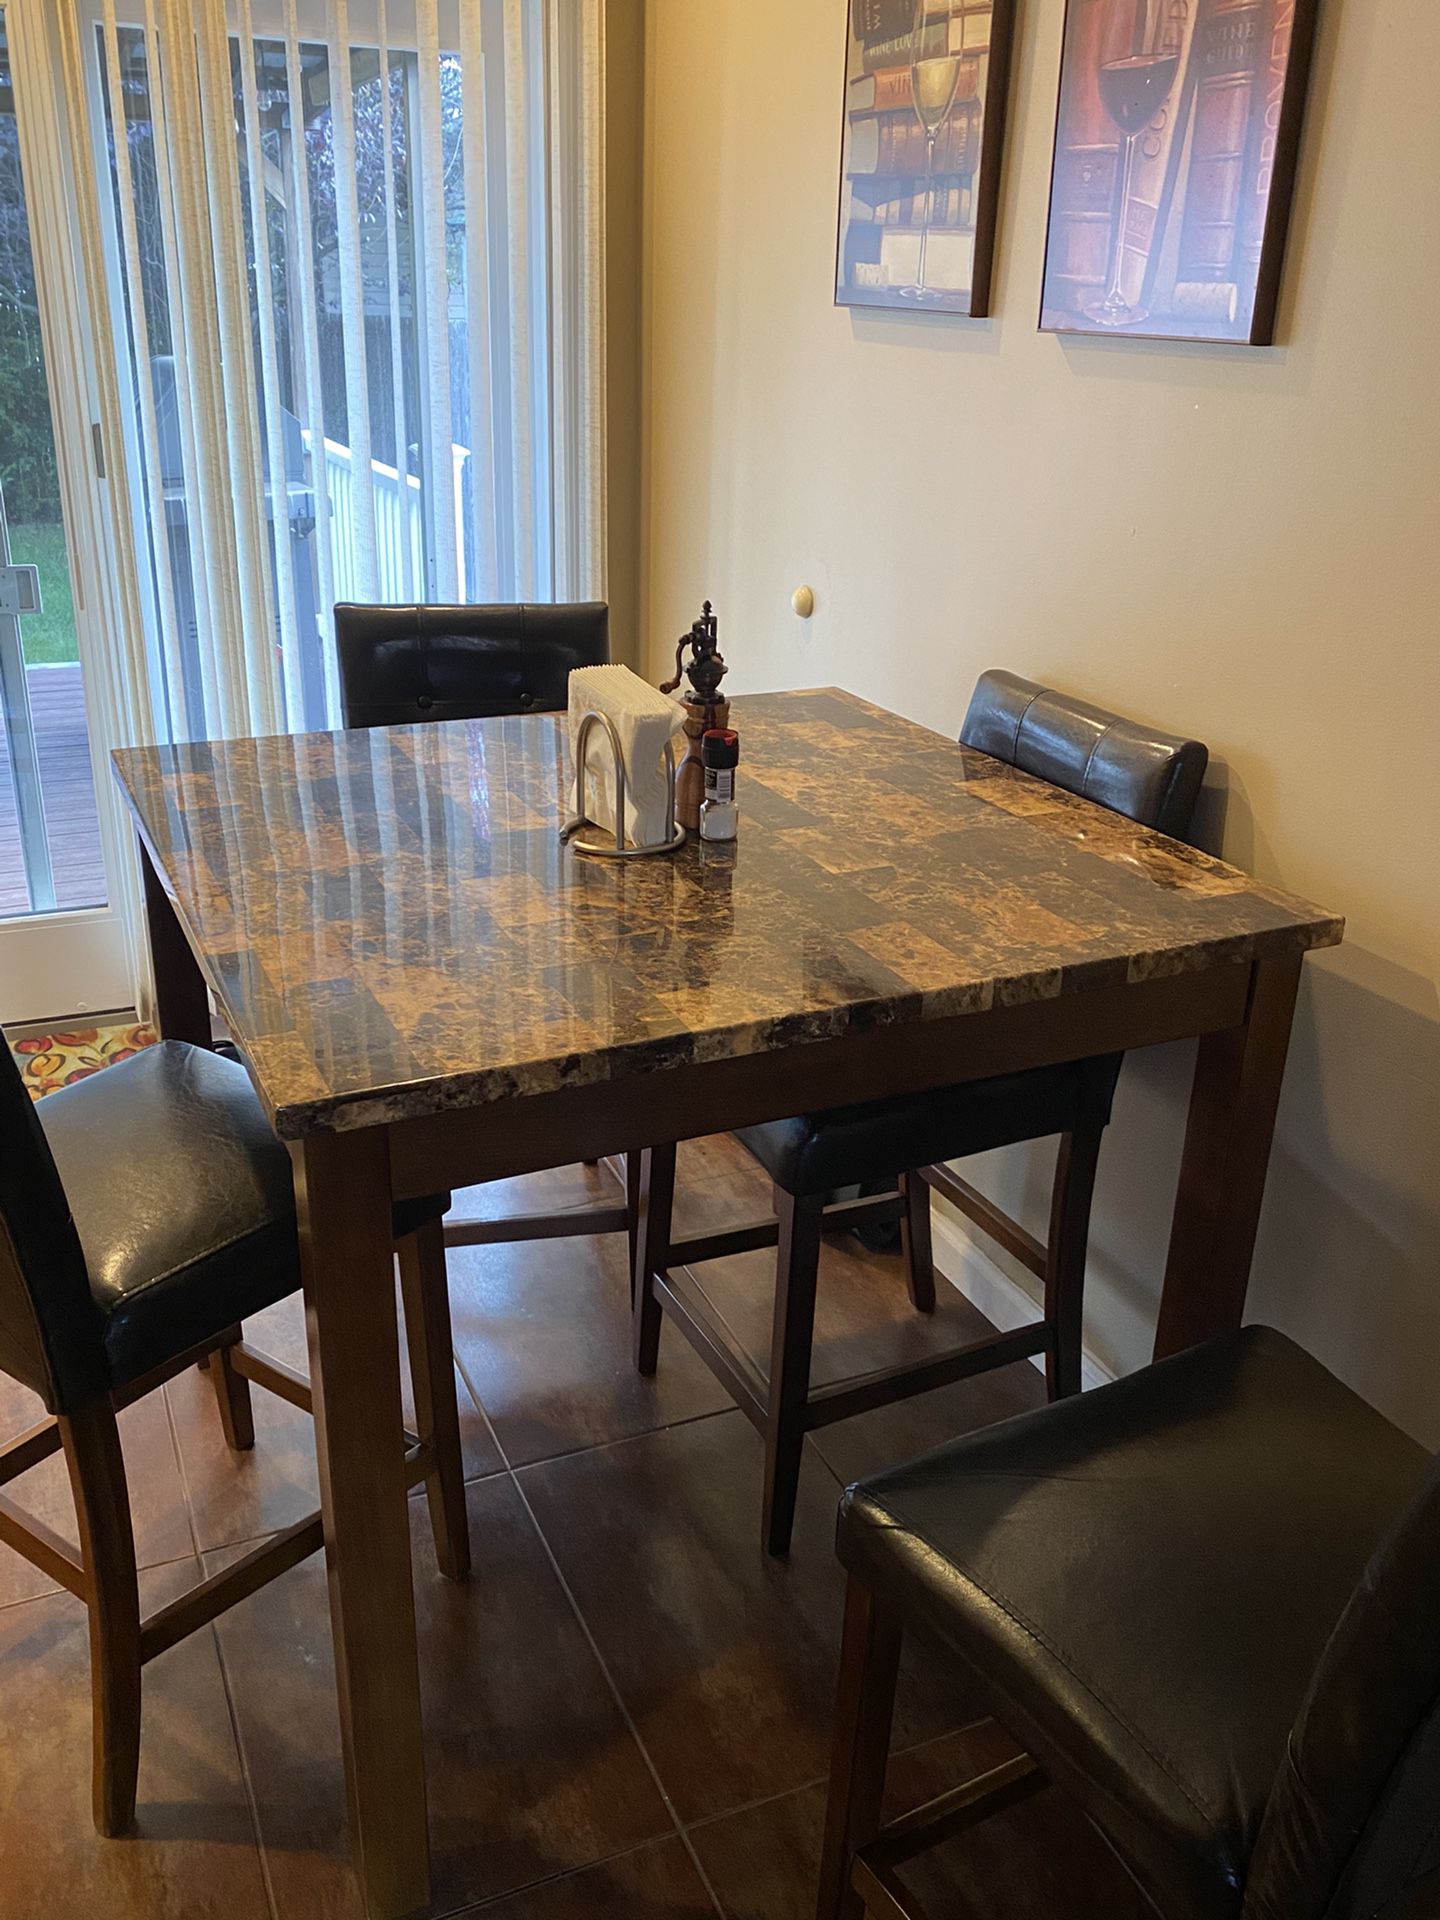 Breakfast room table - pub height